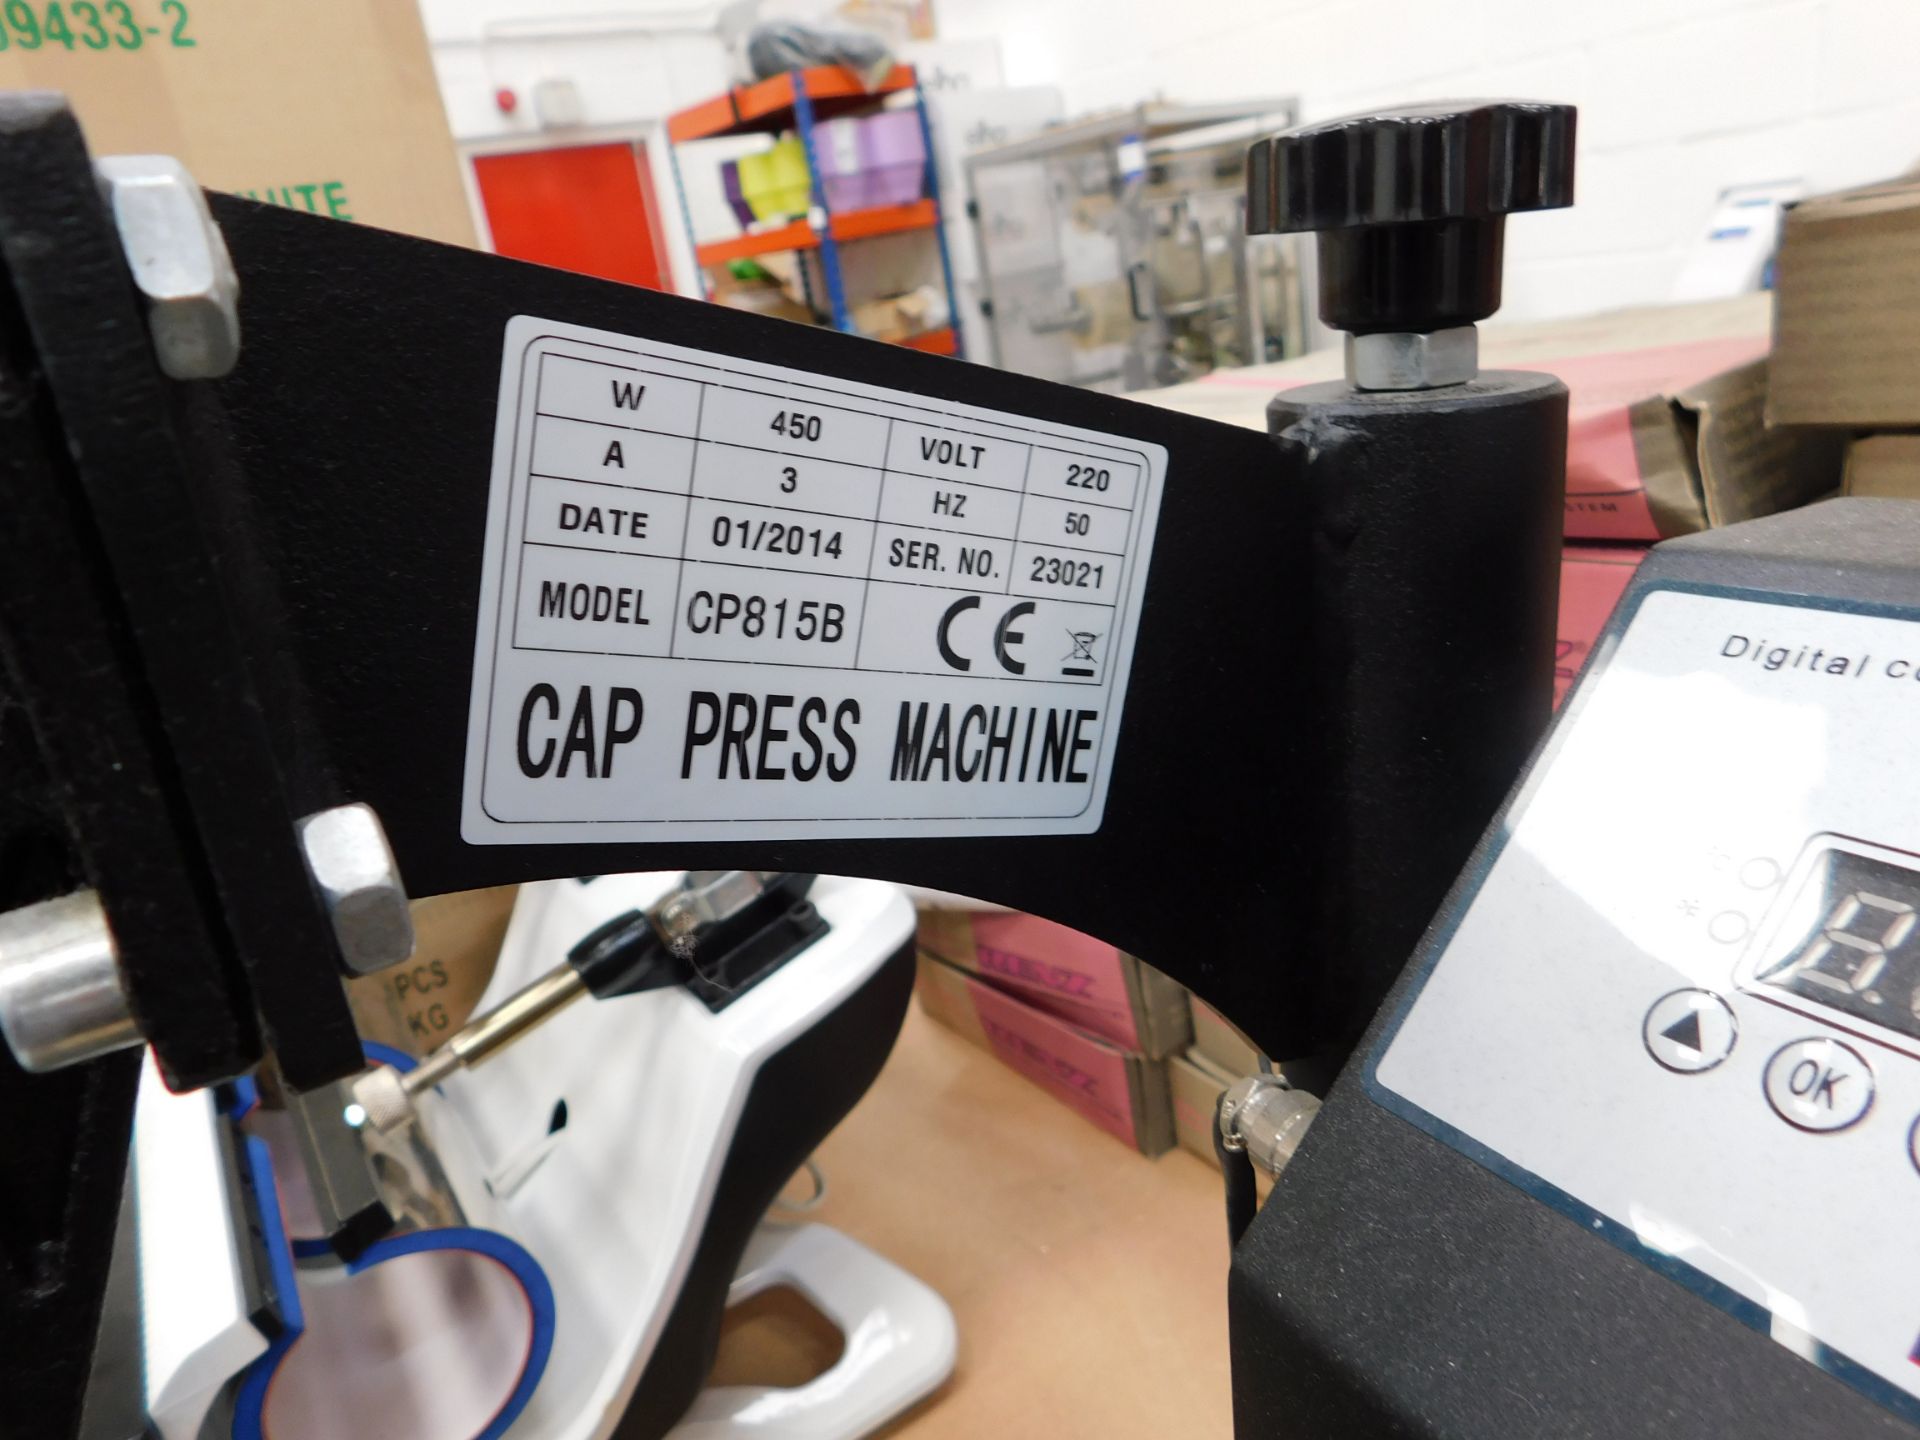 Heatpress CP815B cap press, Serial Number 23021 - Image 2 of 2